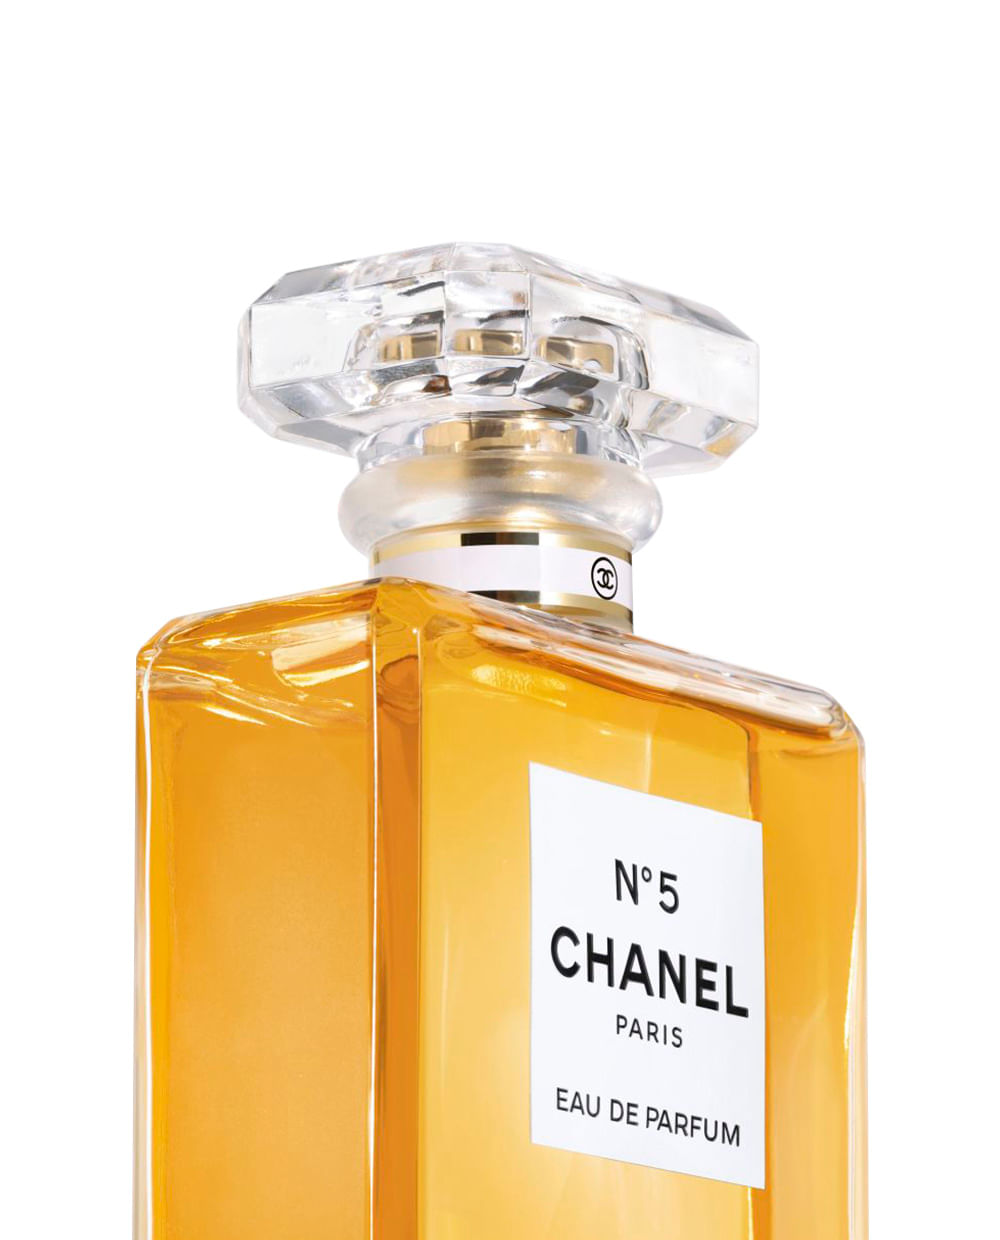 Chanel N5 Eau de Parfum 100 ml desde 13295   Compara precios en idealo